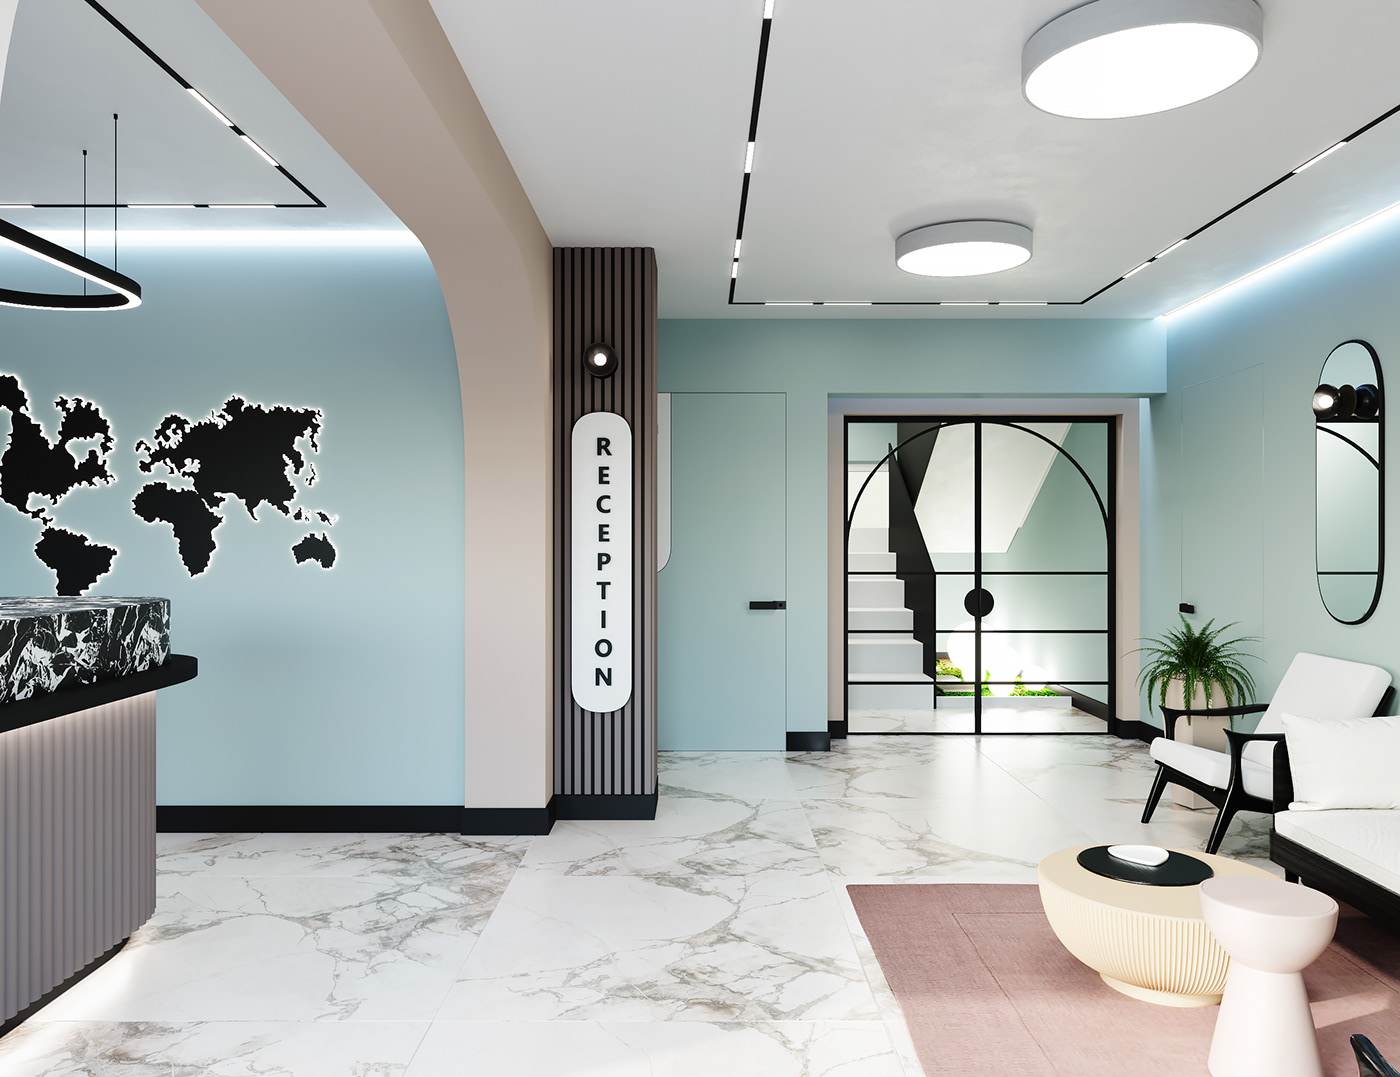 interior design  Lobby architecture 3D visualization 3ds max corona Render hotel reception